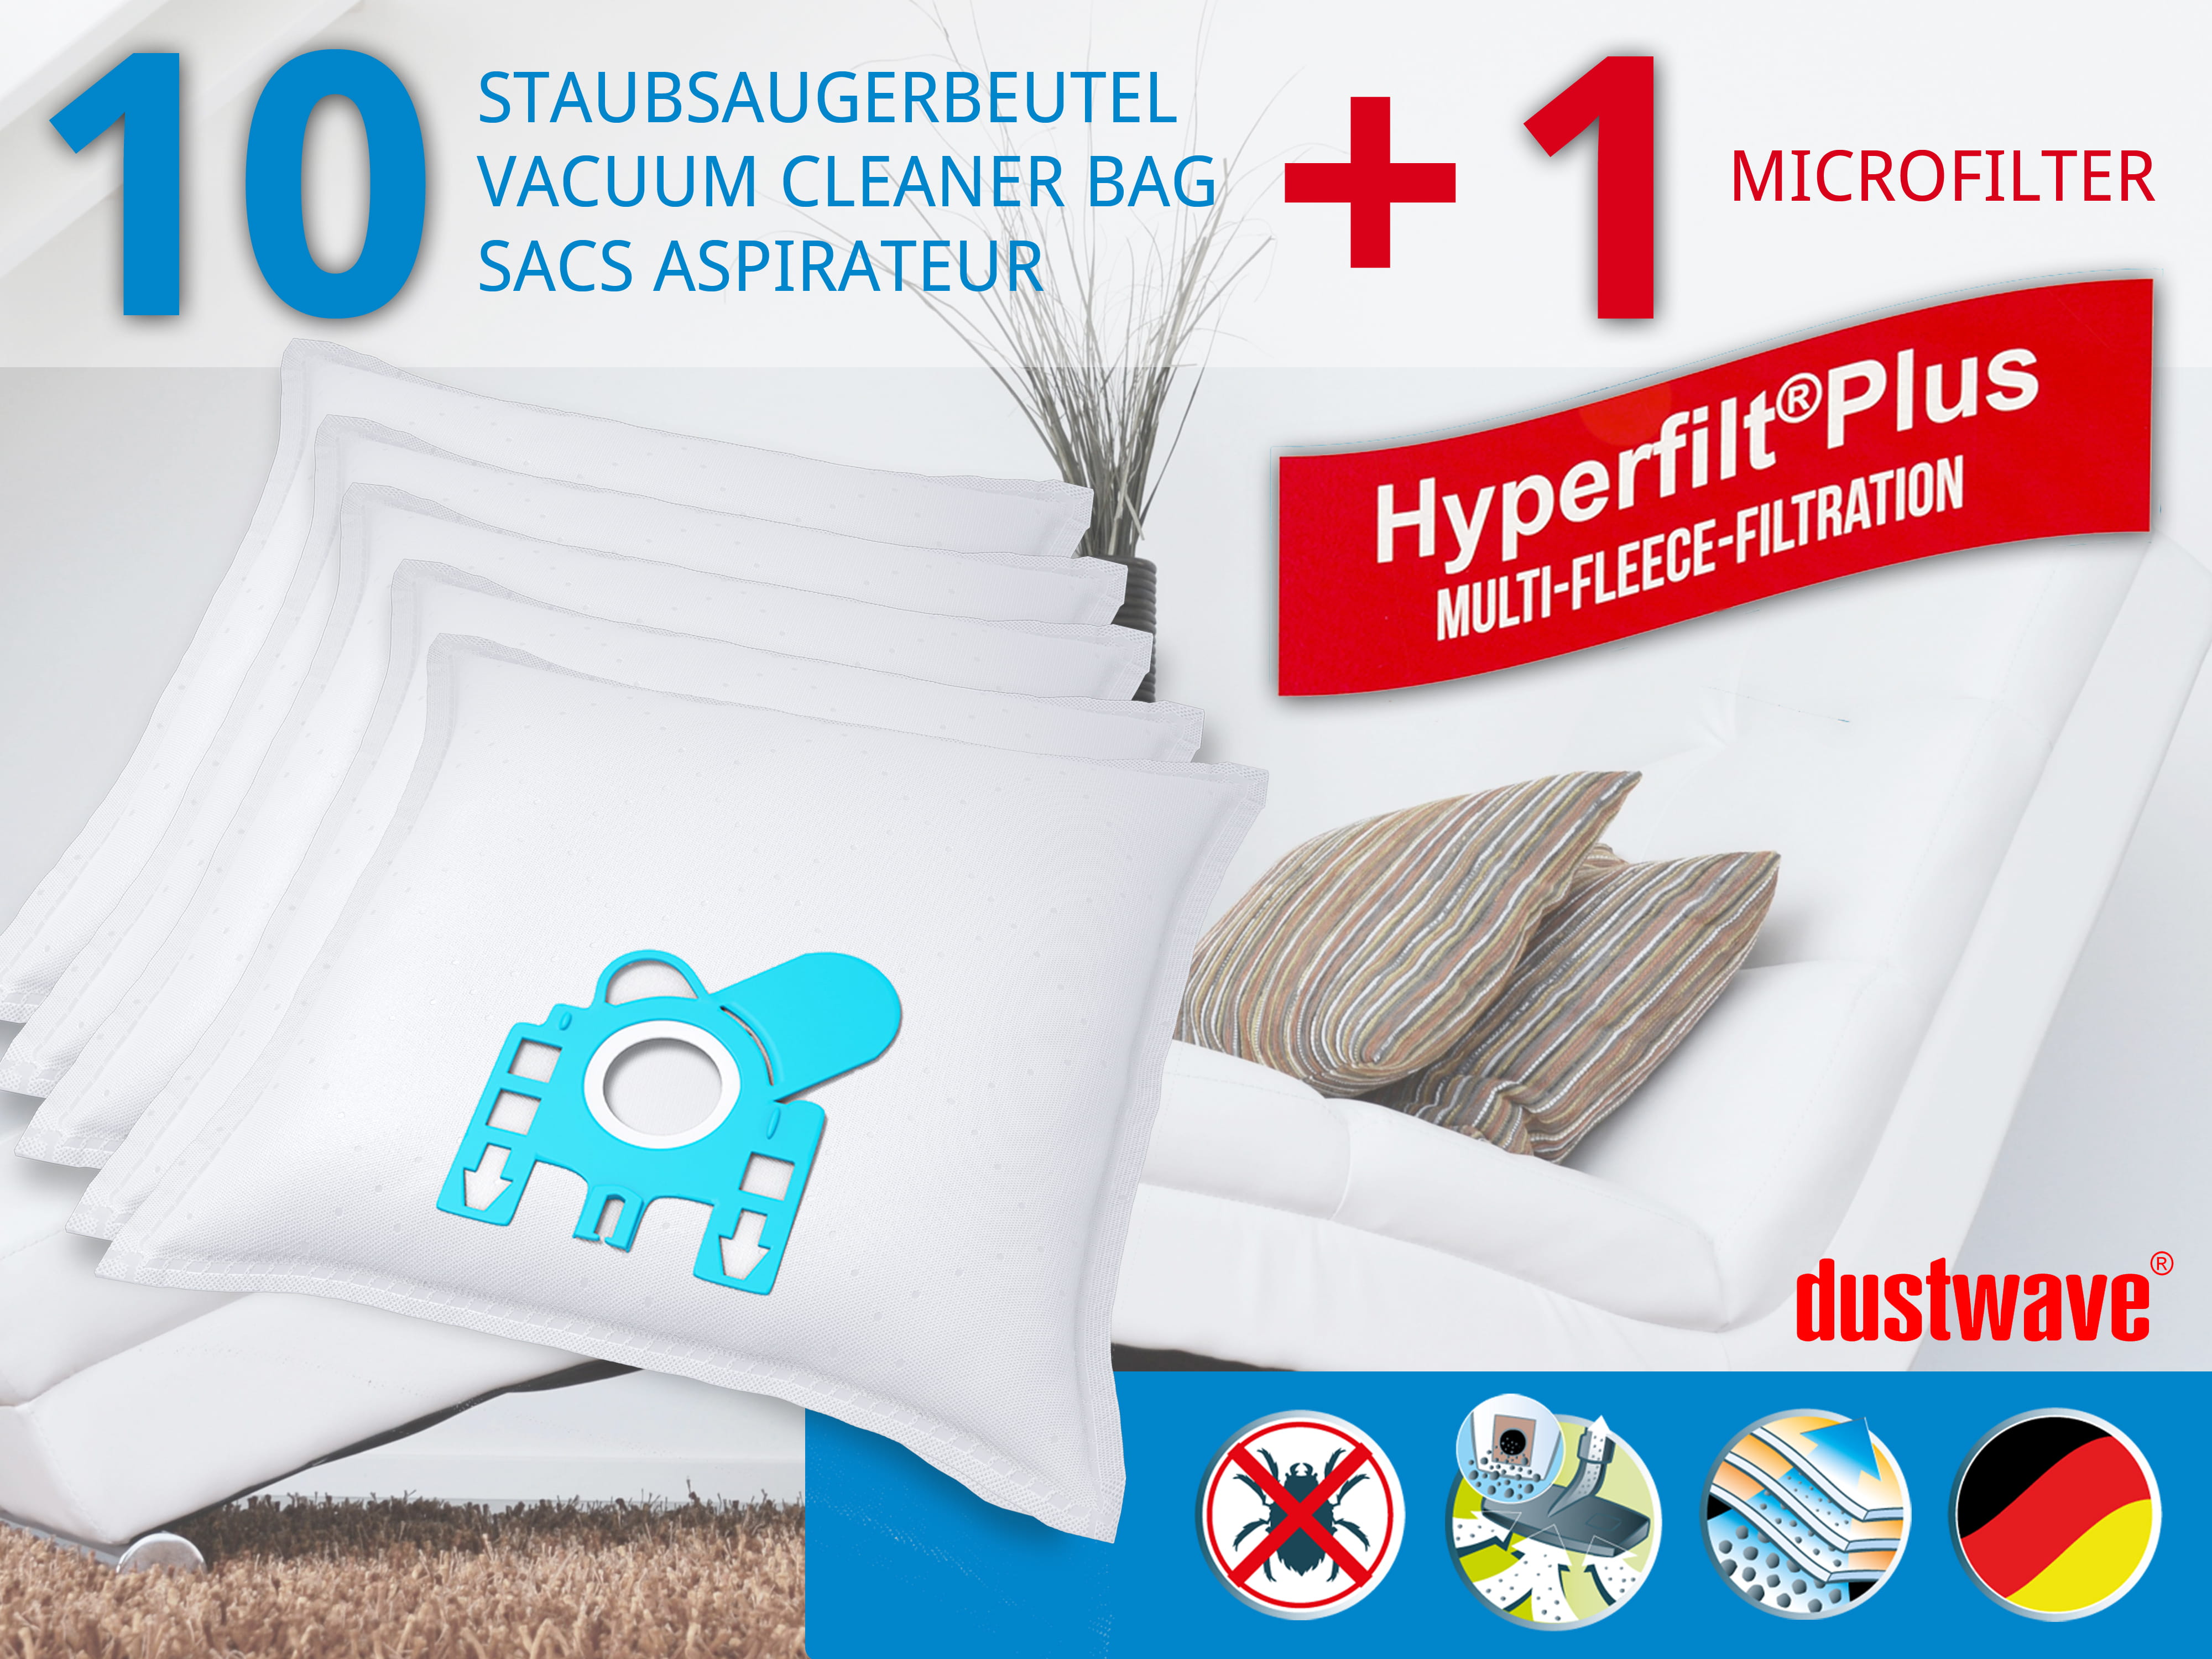 Dustwave® 10 Staubsaugerbeutel für Hoover Micropower SC 150 - hocheffizient, mehrlagiges Mikrovlies mit Hygieneverschluss - Made in Germany